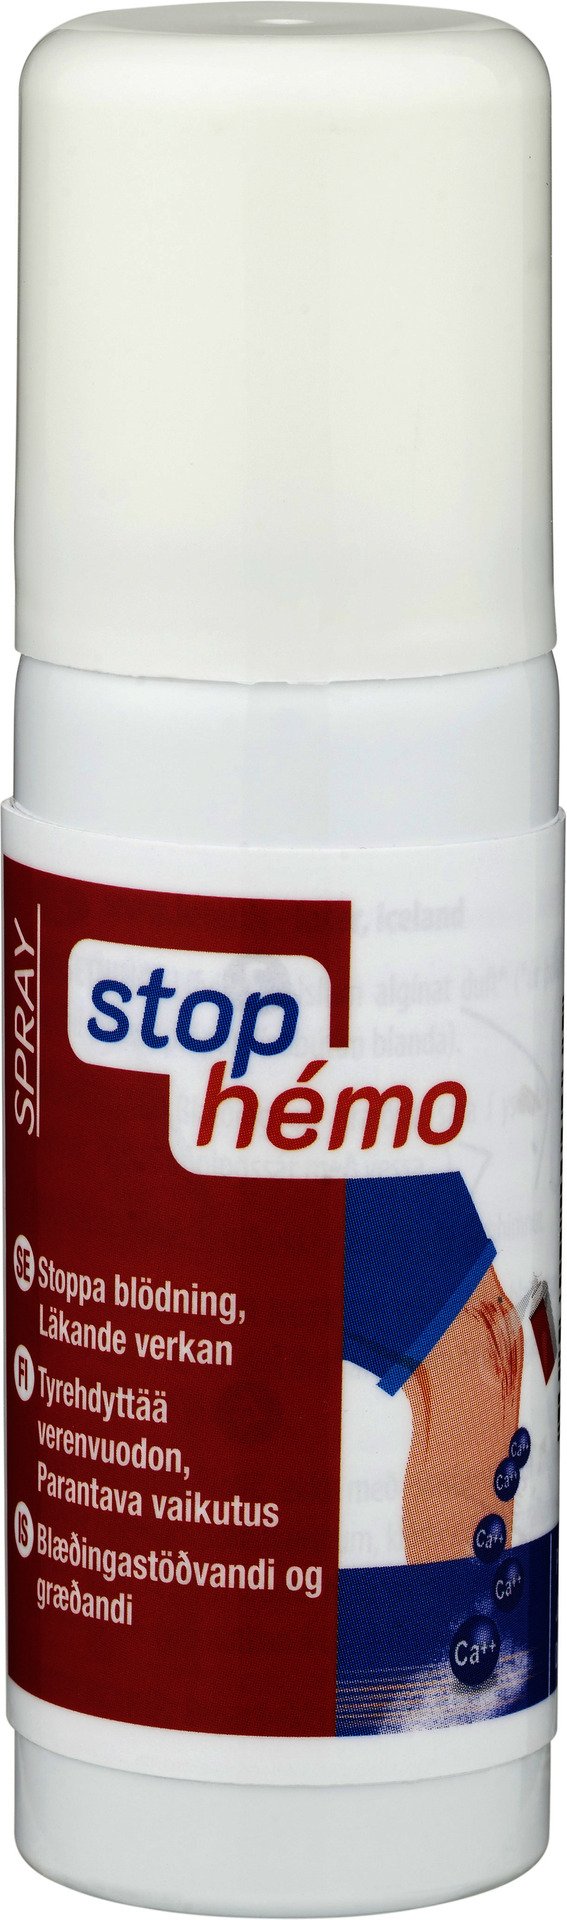 stop hémo Sårspray 50 ml